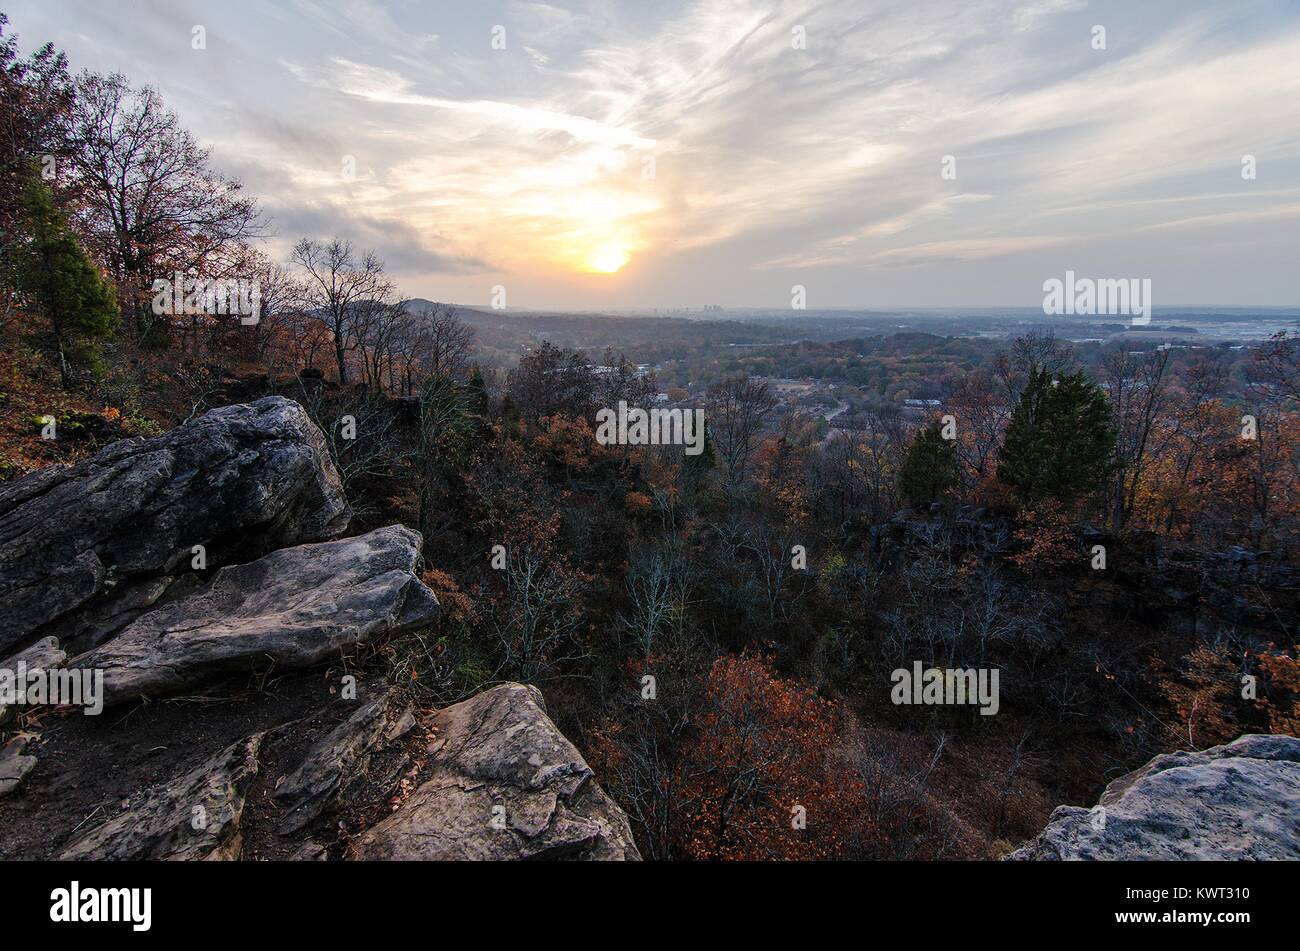 Amanecer sobre acantilados y árboles en Ruffner montaña, dentro Ruffner Mountain Nature Preserve en Birmingham, Alabama, el 30 de noviembre de 2016. Imagen cortesía de Morgan Yang. Foto de stock